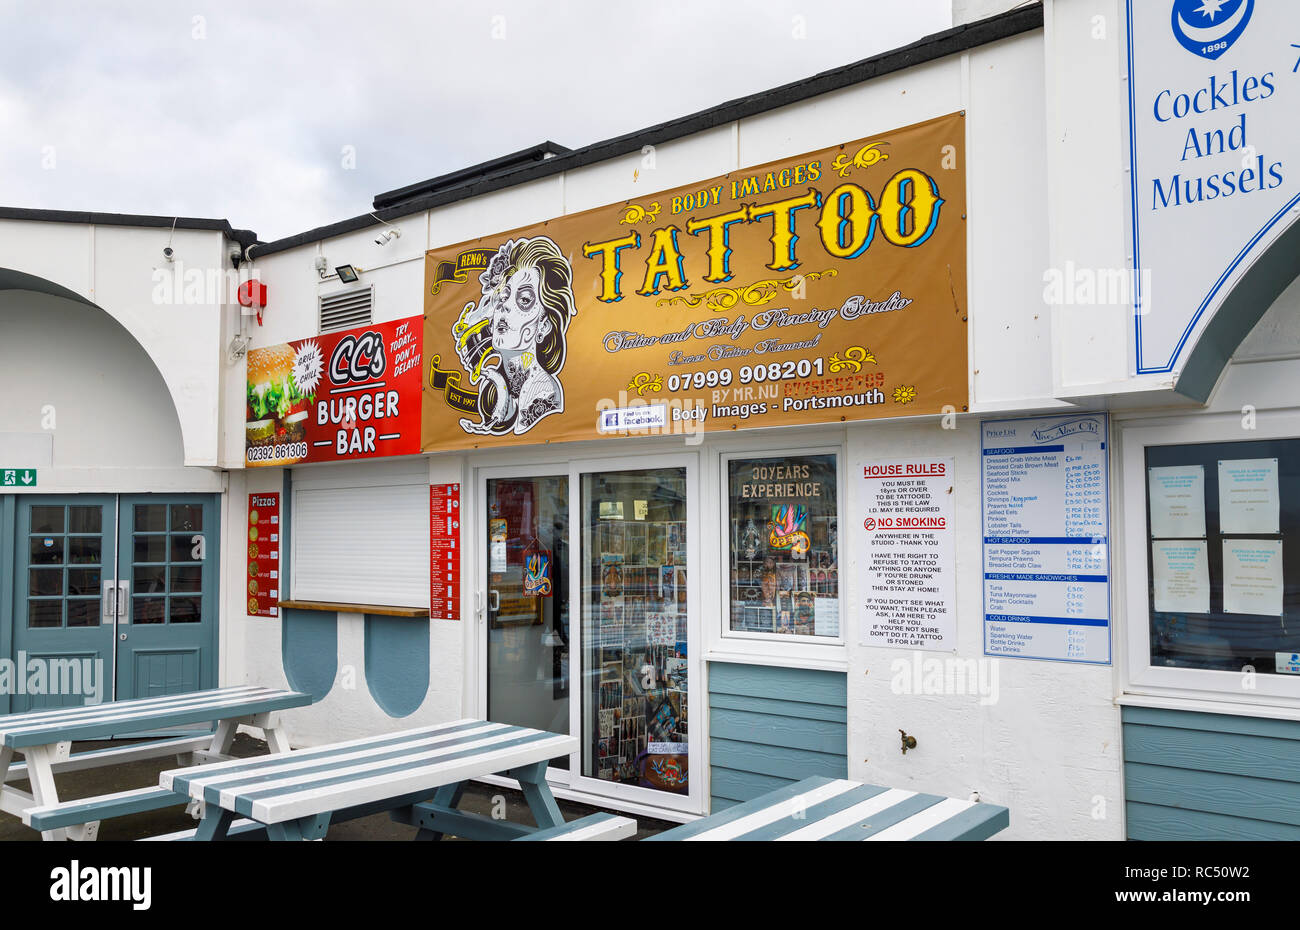 Immagini body tattoo e body piercing studio per body art su South Parade Pier, Southsea, Portsmouth, south coast Inghilterra, Regno Unito Foto Stock